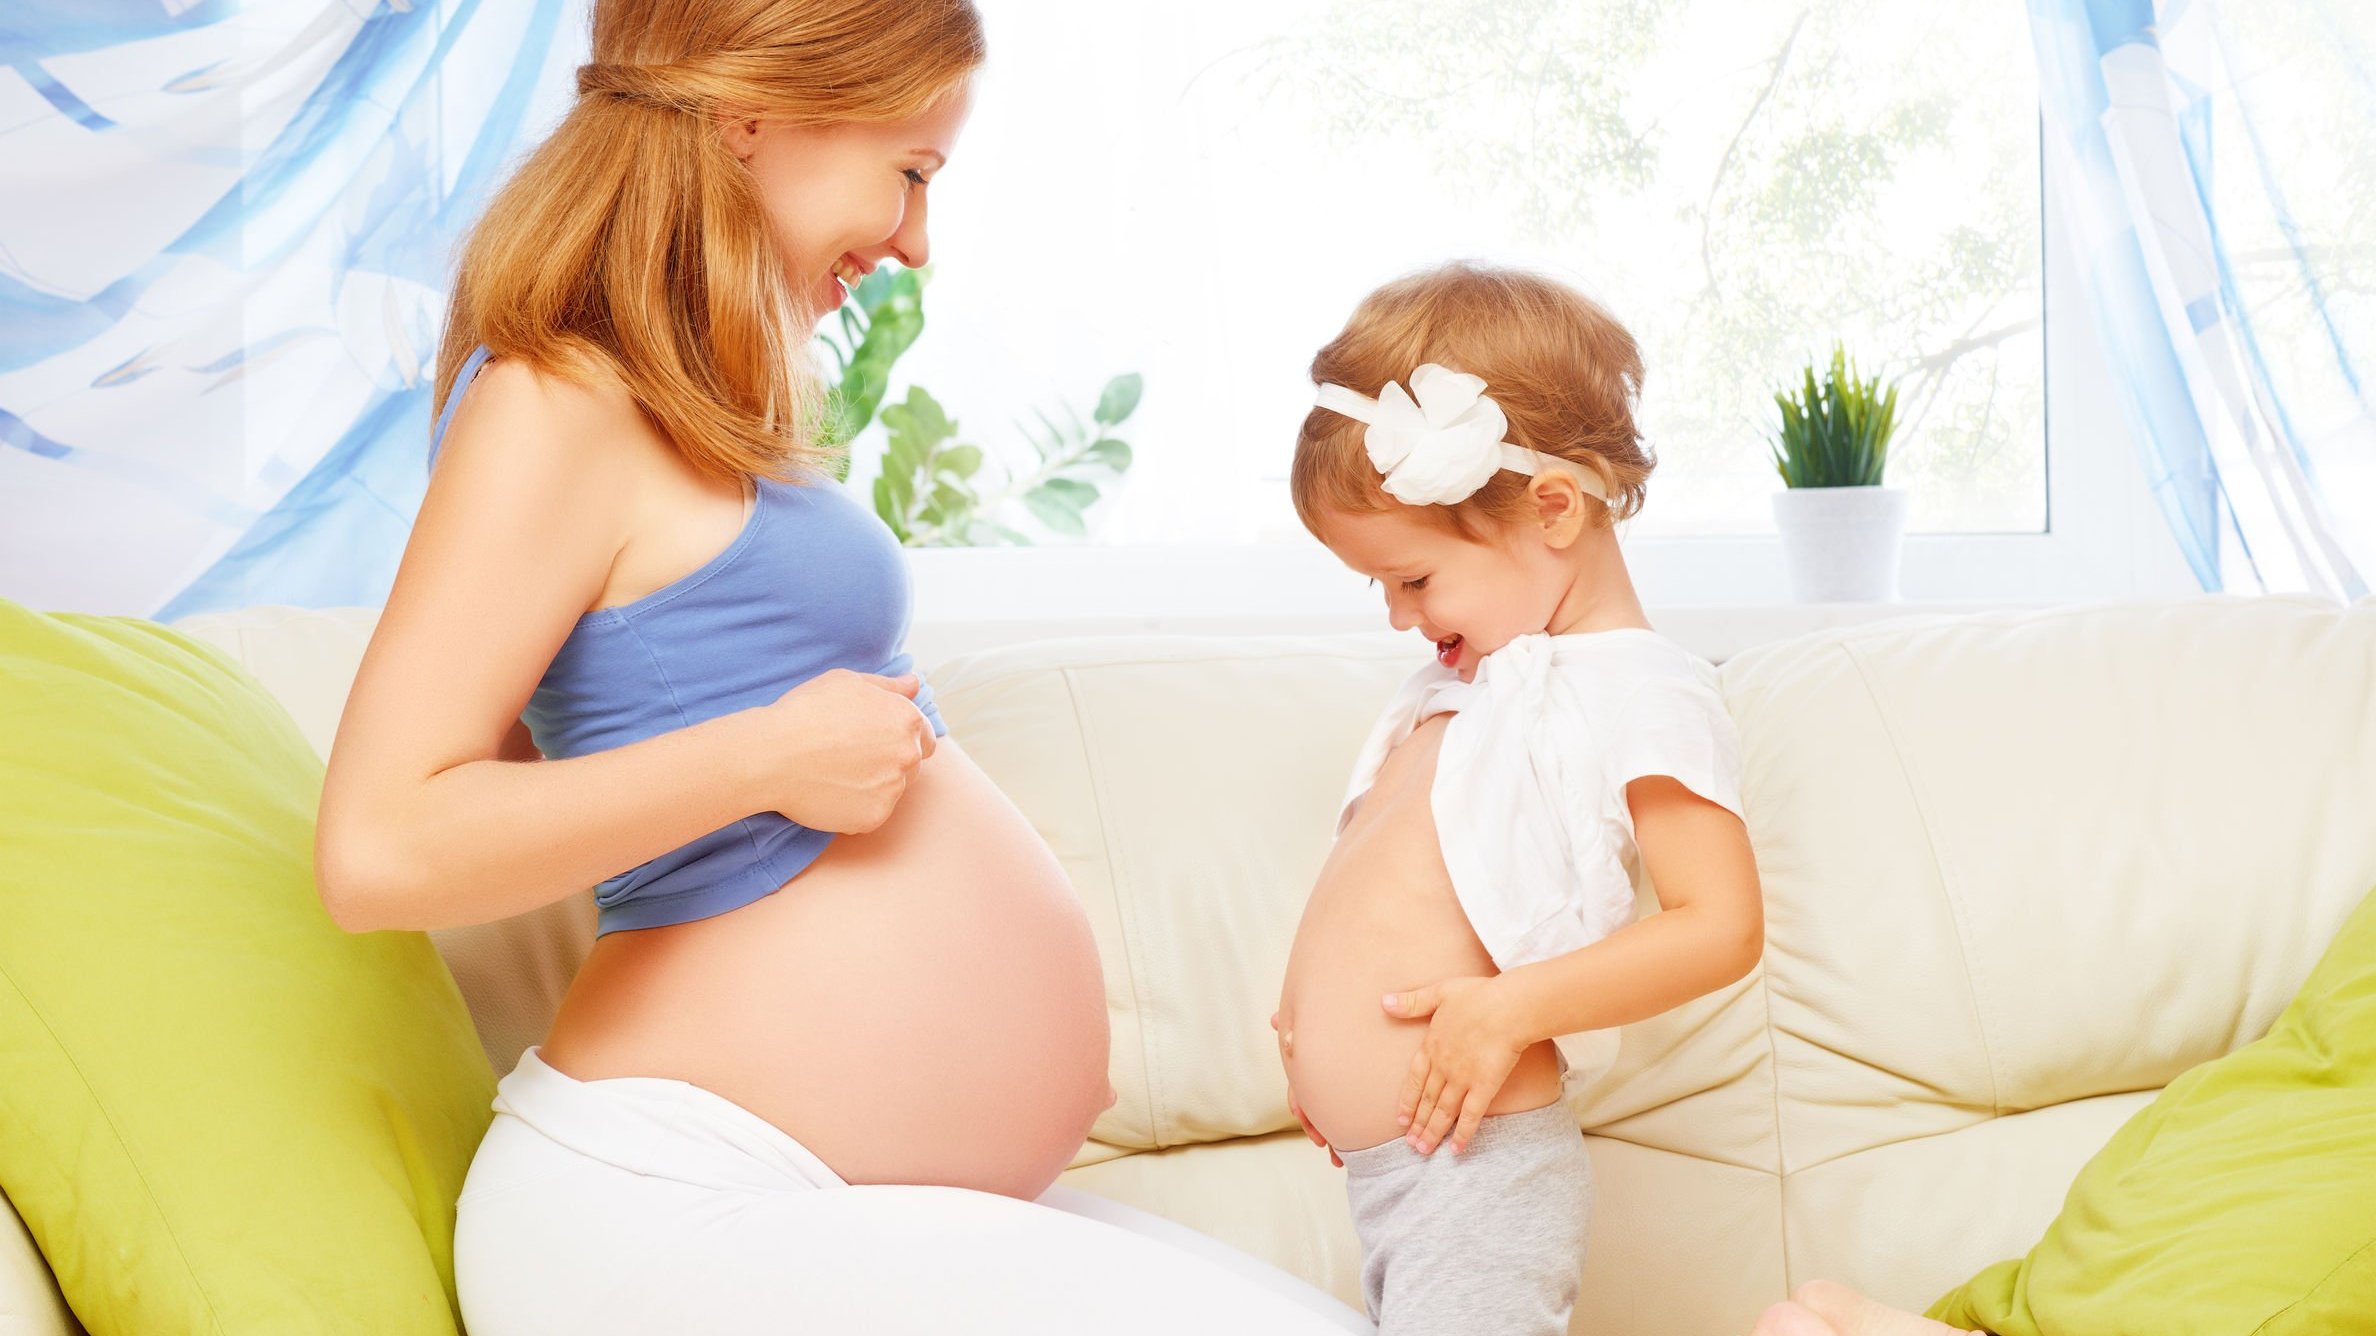 Mulher com blusa que deixa sua barriga grávida a mostra, sorrindo, de frente para uma menina pequena, que segura sua blusa levantada enquanto estufa a barriga para parecer grande.